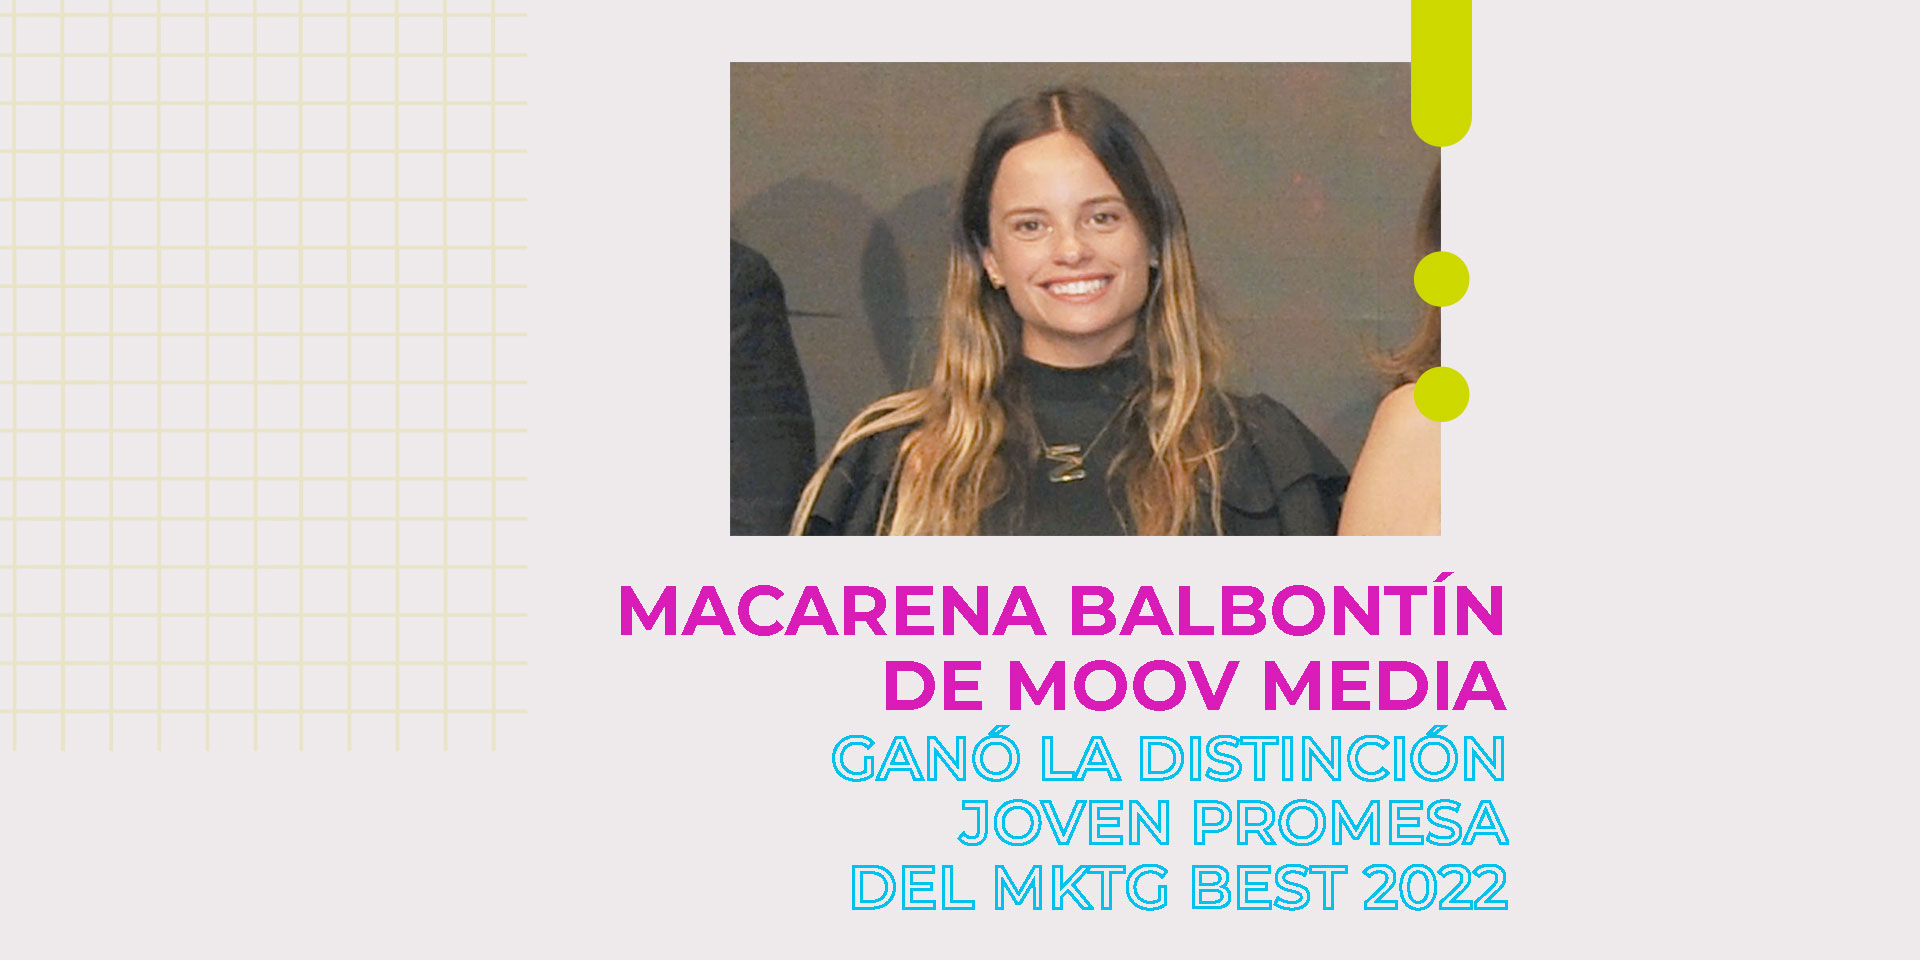 Macarena Balbontín de Moov Media ganó una distinción en el MKTG Best 2022